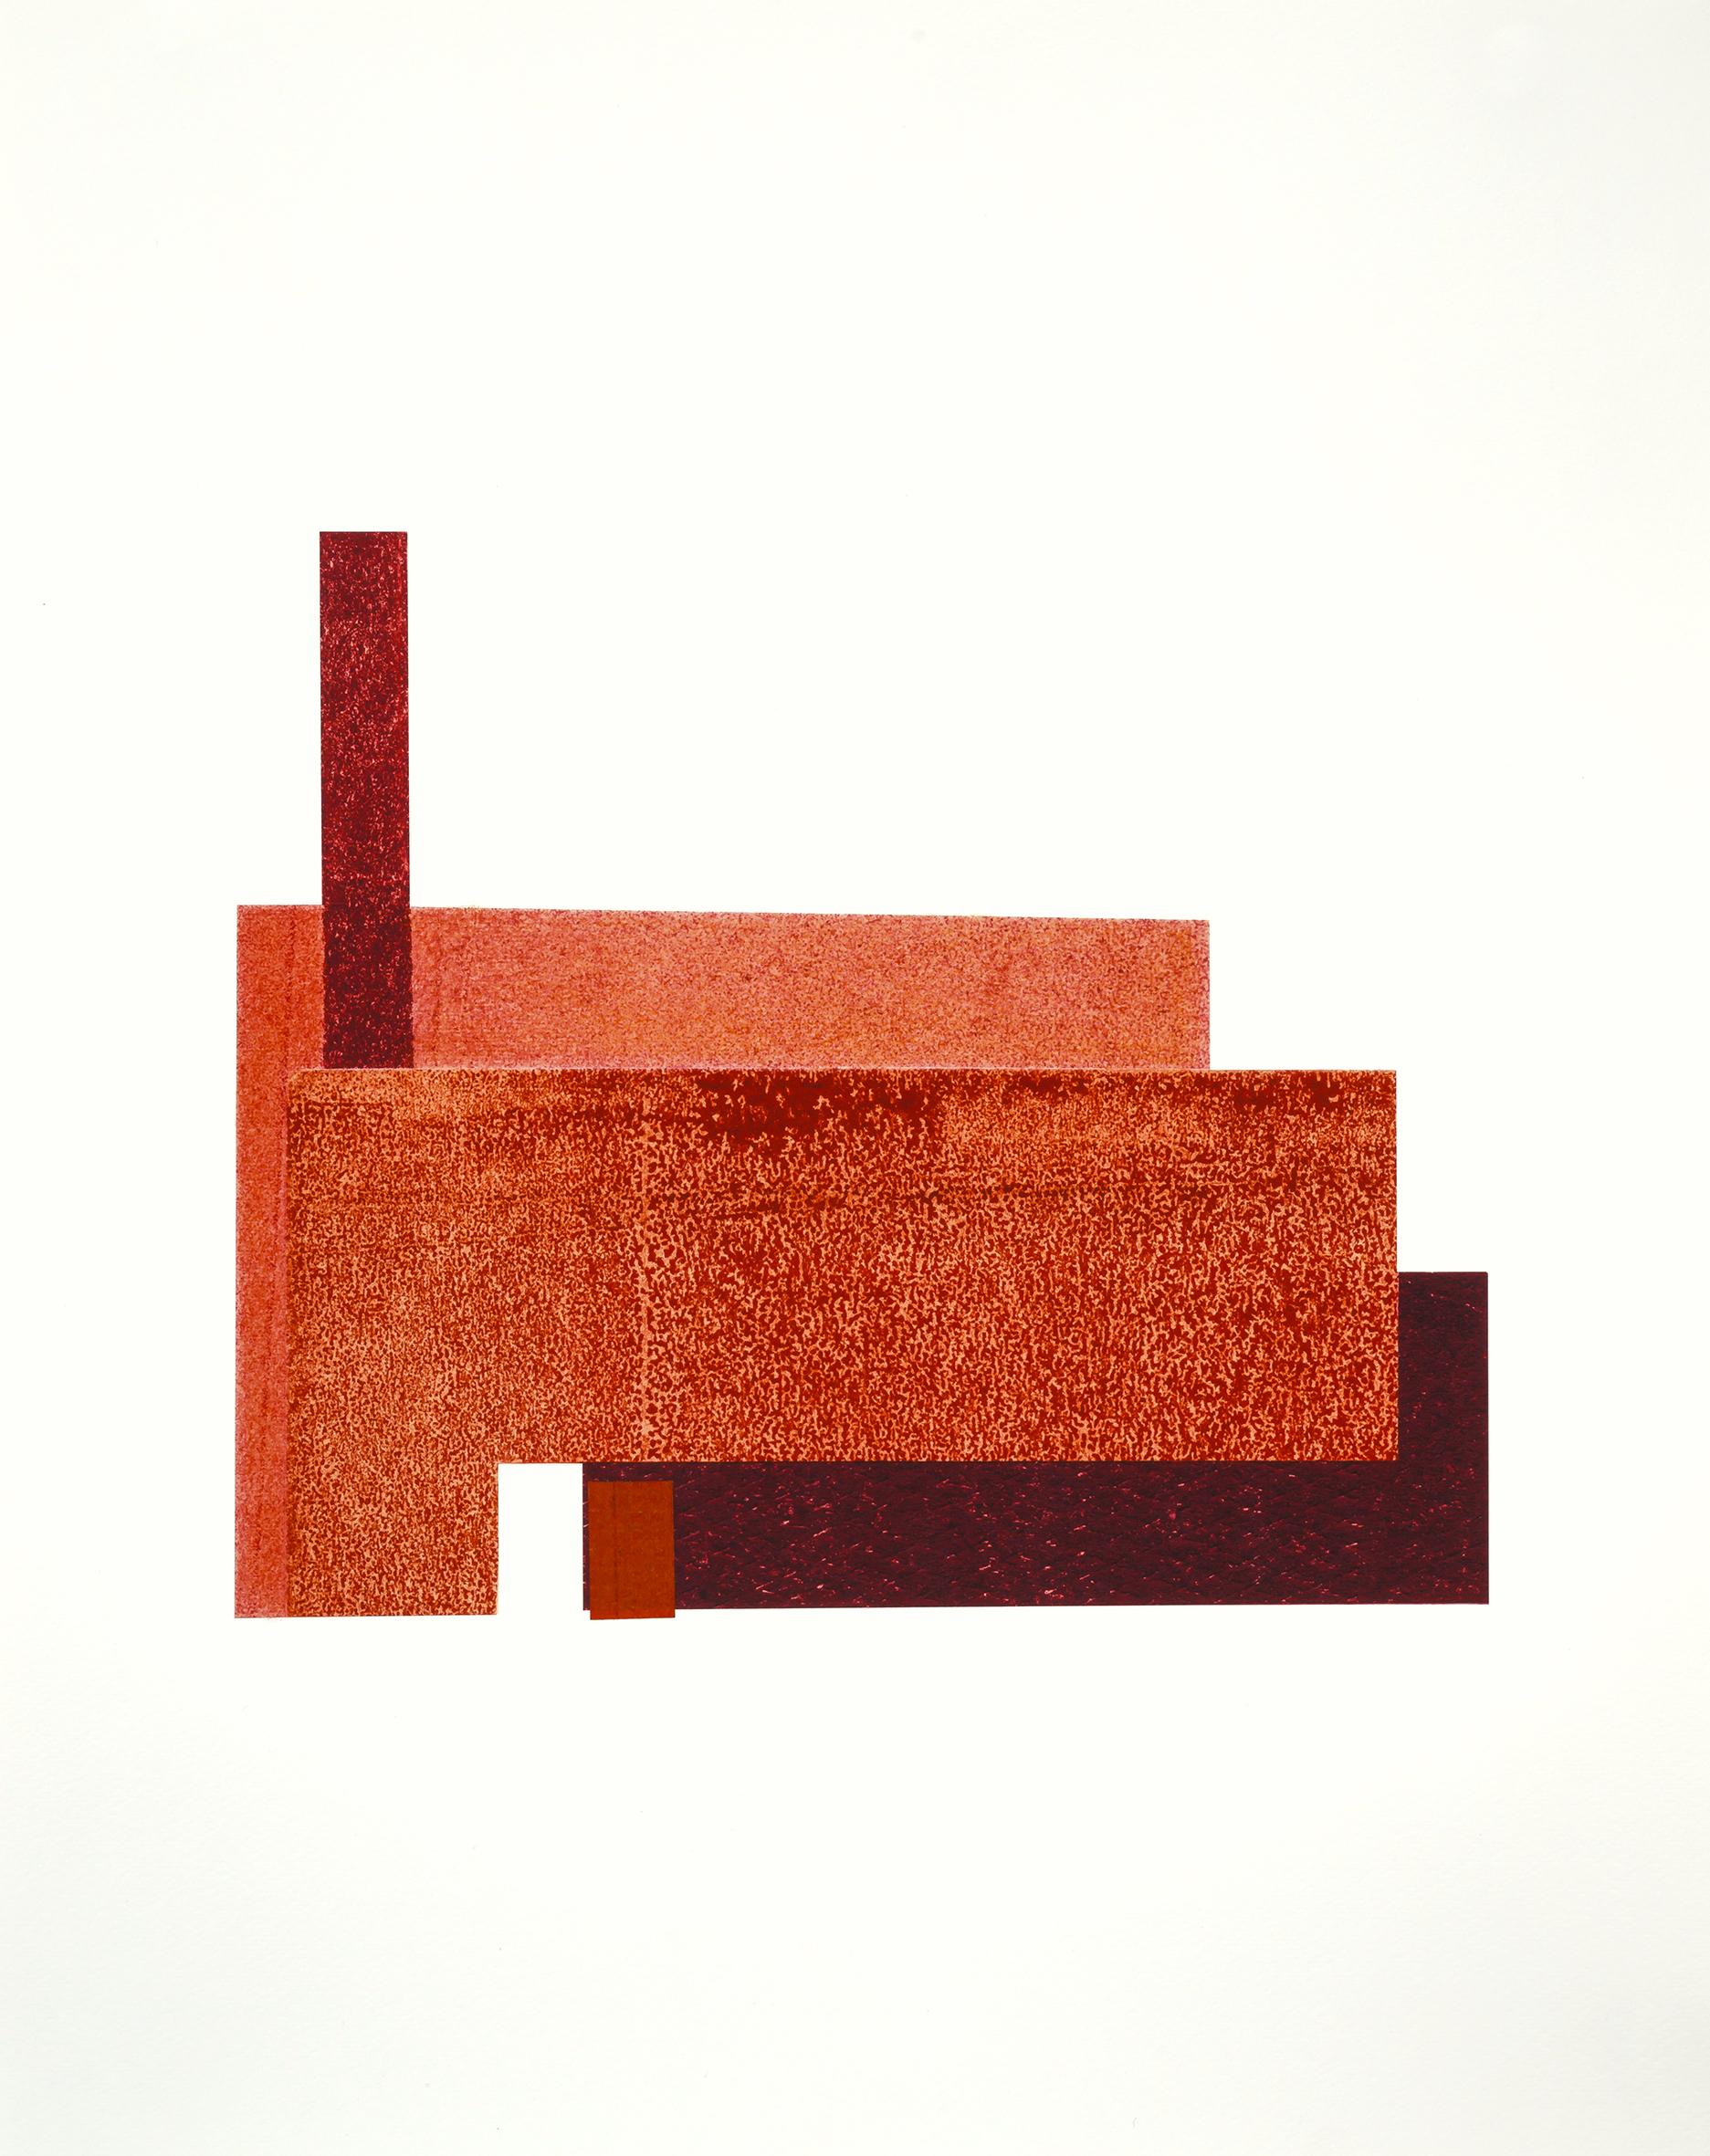 Landscape Art Agathe Bouton - Factory X : collage architectural urbain moderniste sur monoimpression en rouge, encadré